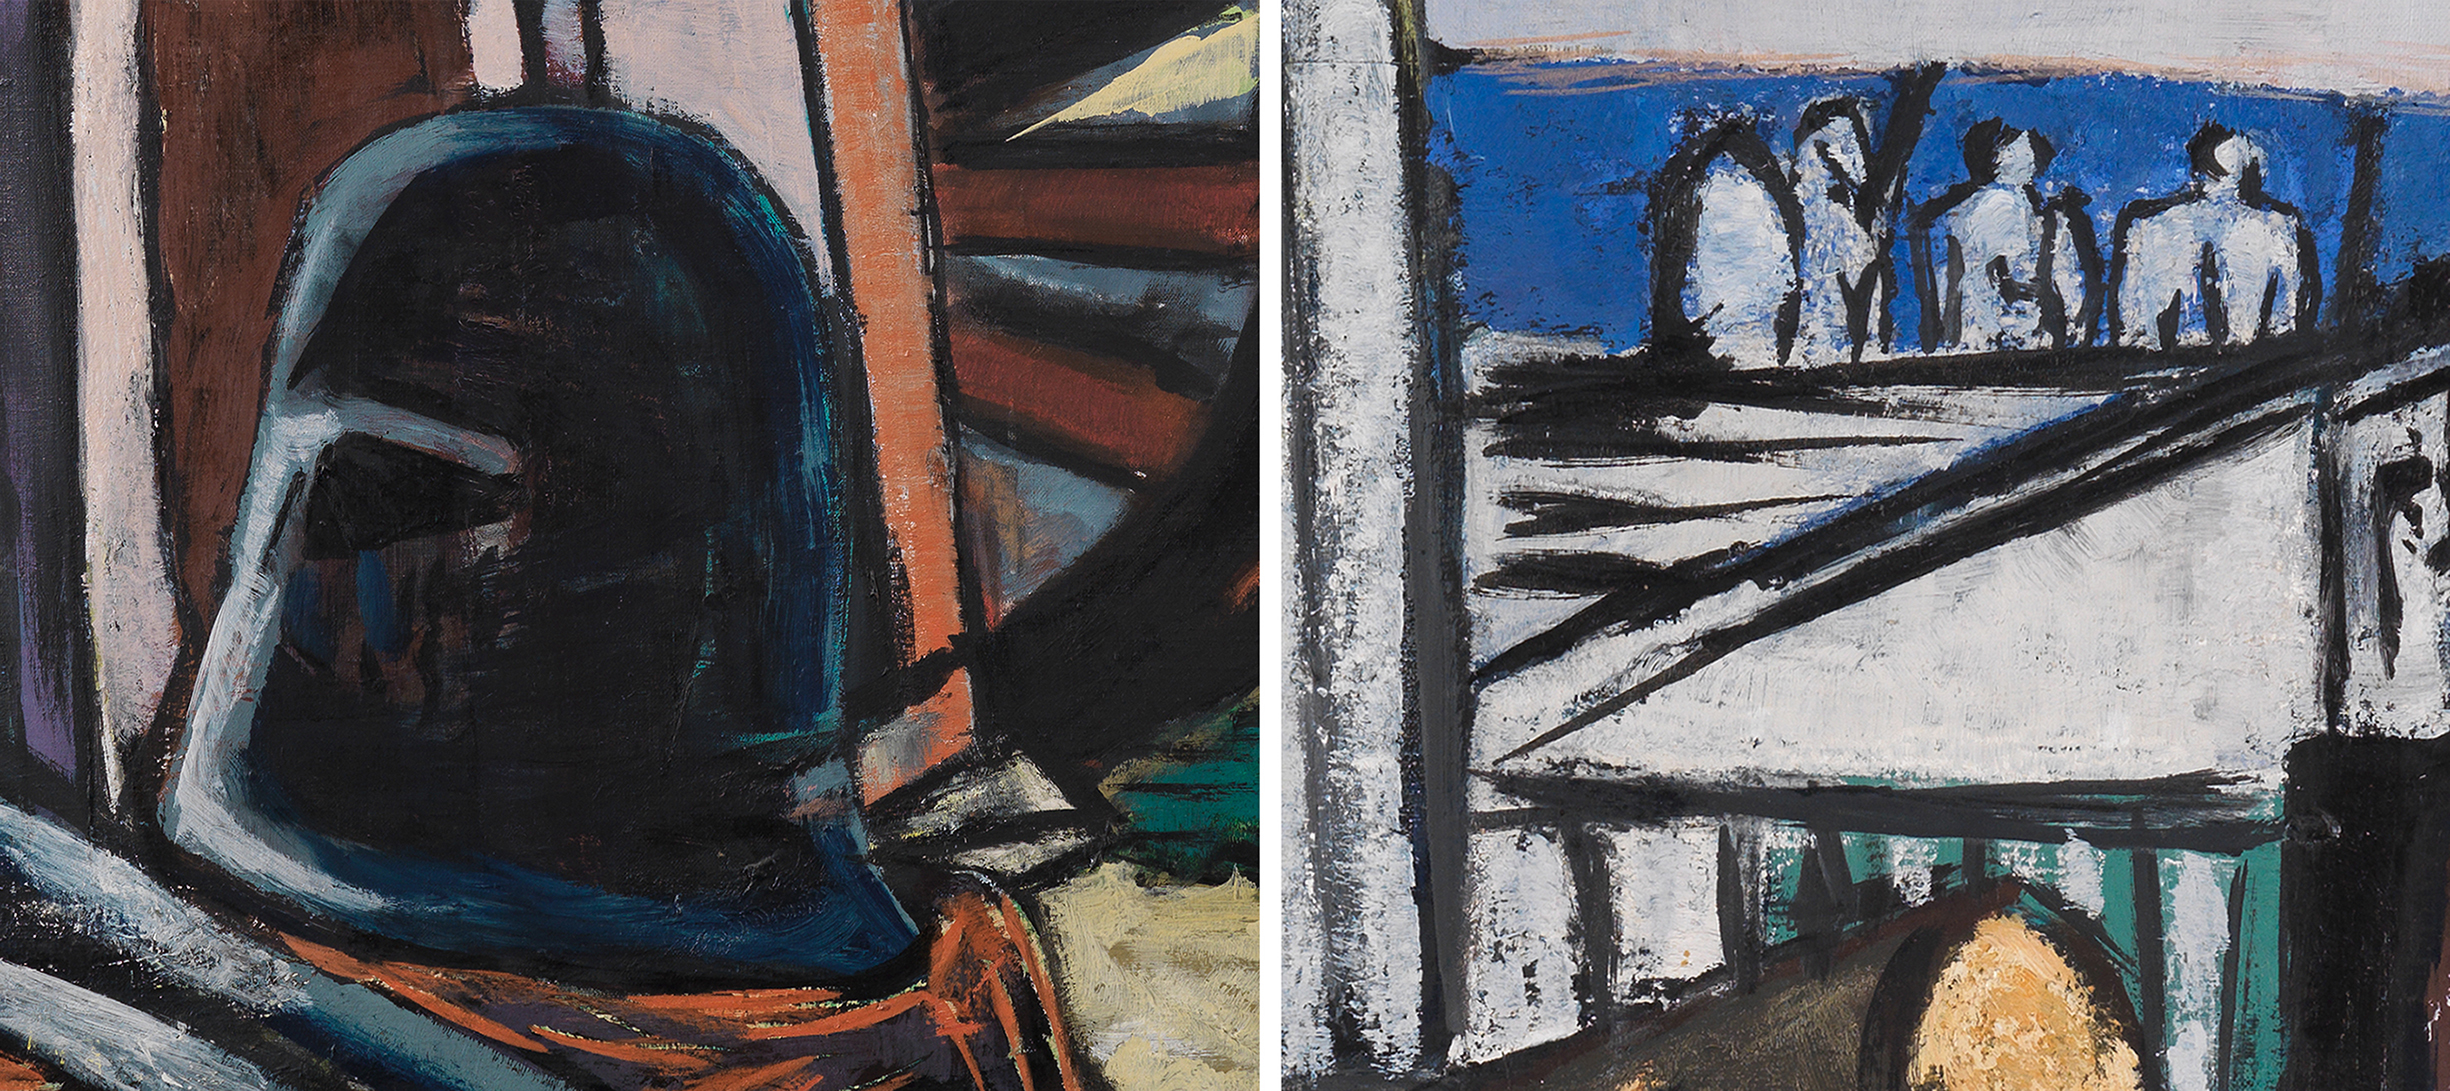 Links: Ausschnitt aus Max Beckmanns Gemälde Abtransport der Sphinxe. Detail eines Helms und eines Schwerts. Rechts: Ausschnitt aus Max Beckmanns Gemälde Abtransport der Sphinxe. Detail eines weißen Tempels vor blauem Hintergrund.